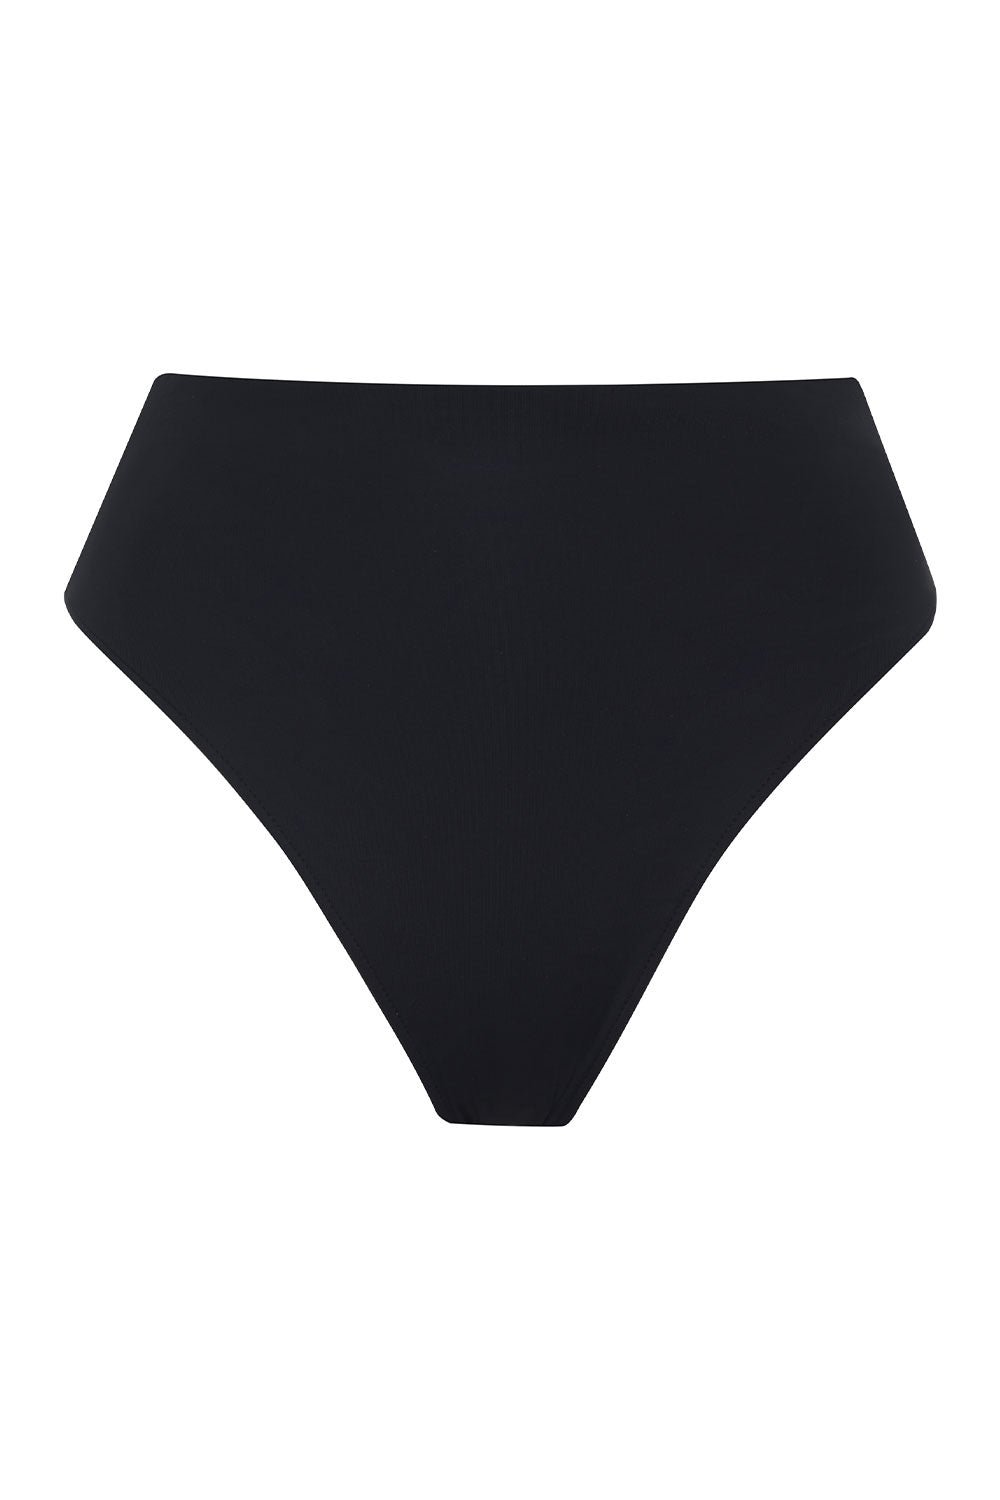 Jenna High Waist Bikini Bottom - Black